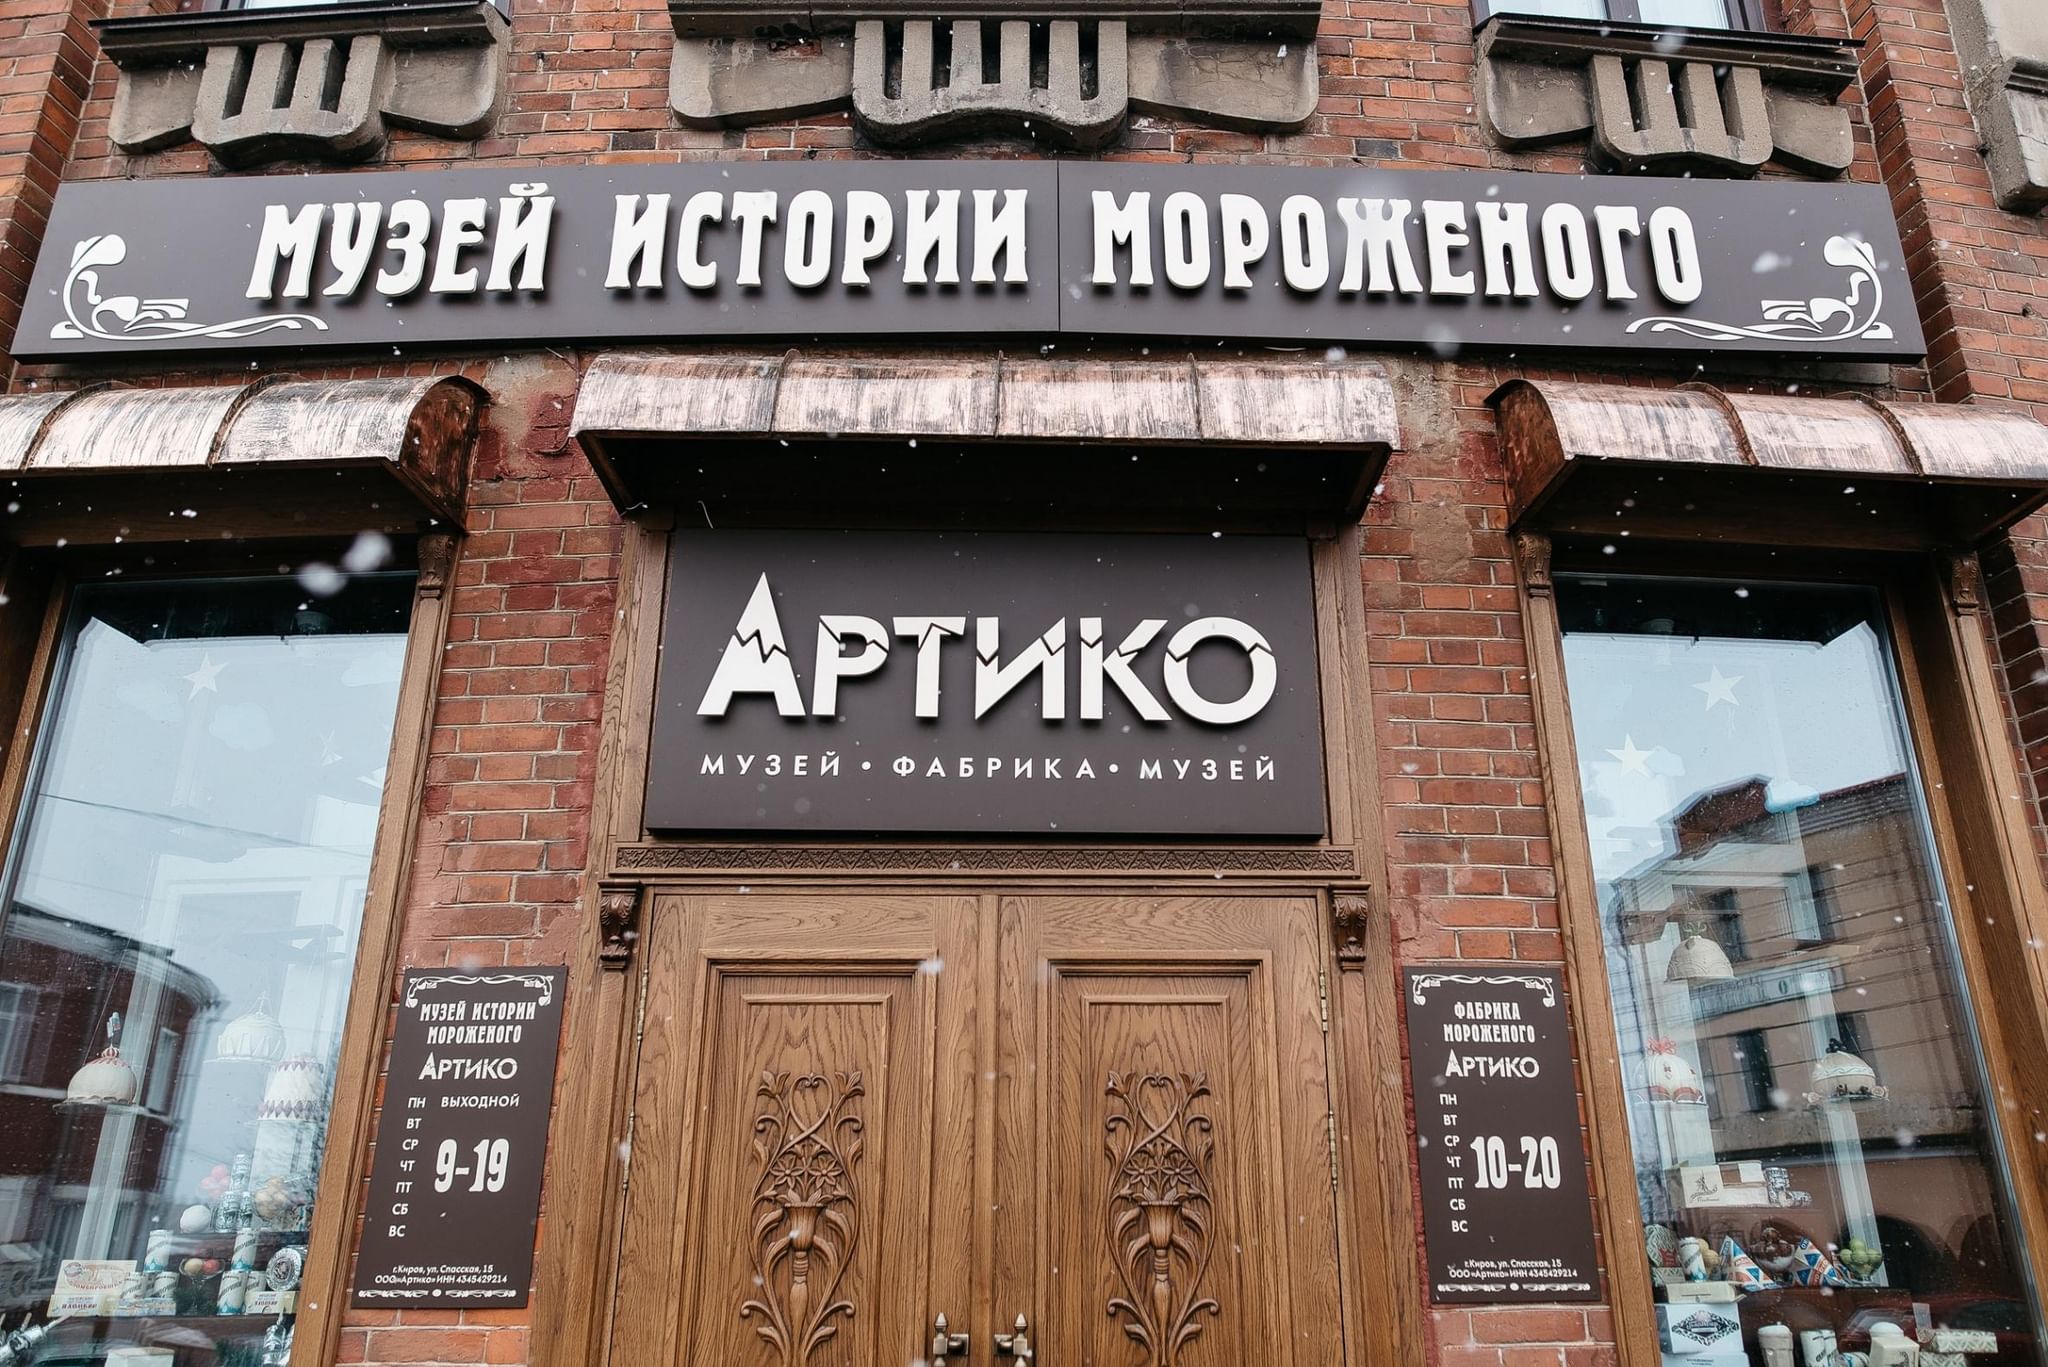 Музей истории мороженого «Артико» в Кирове